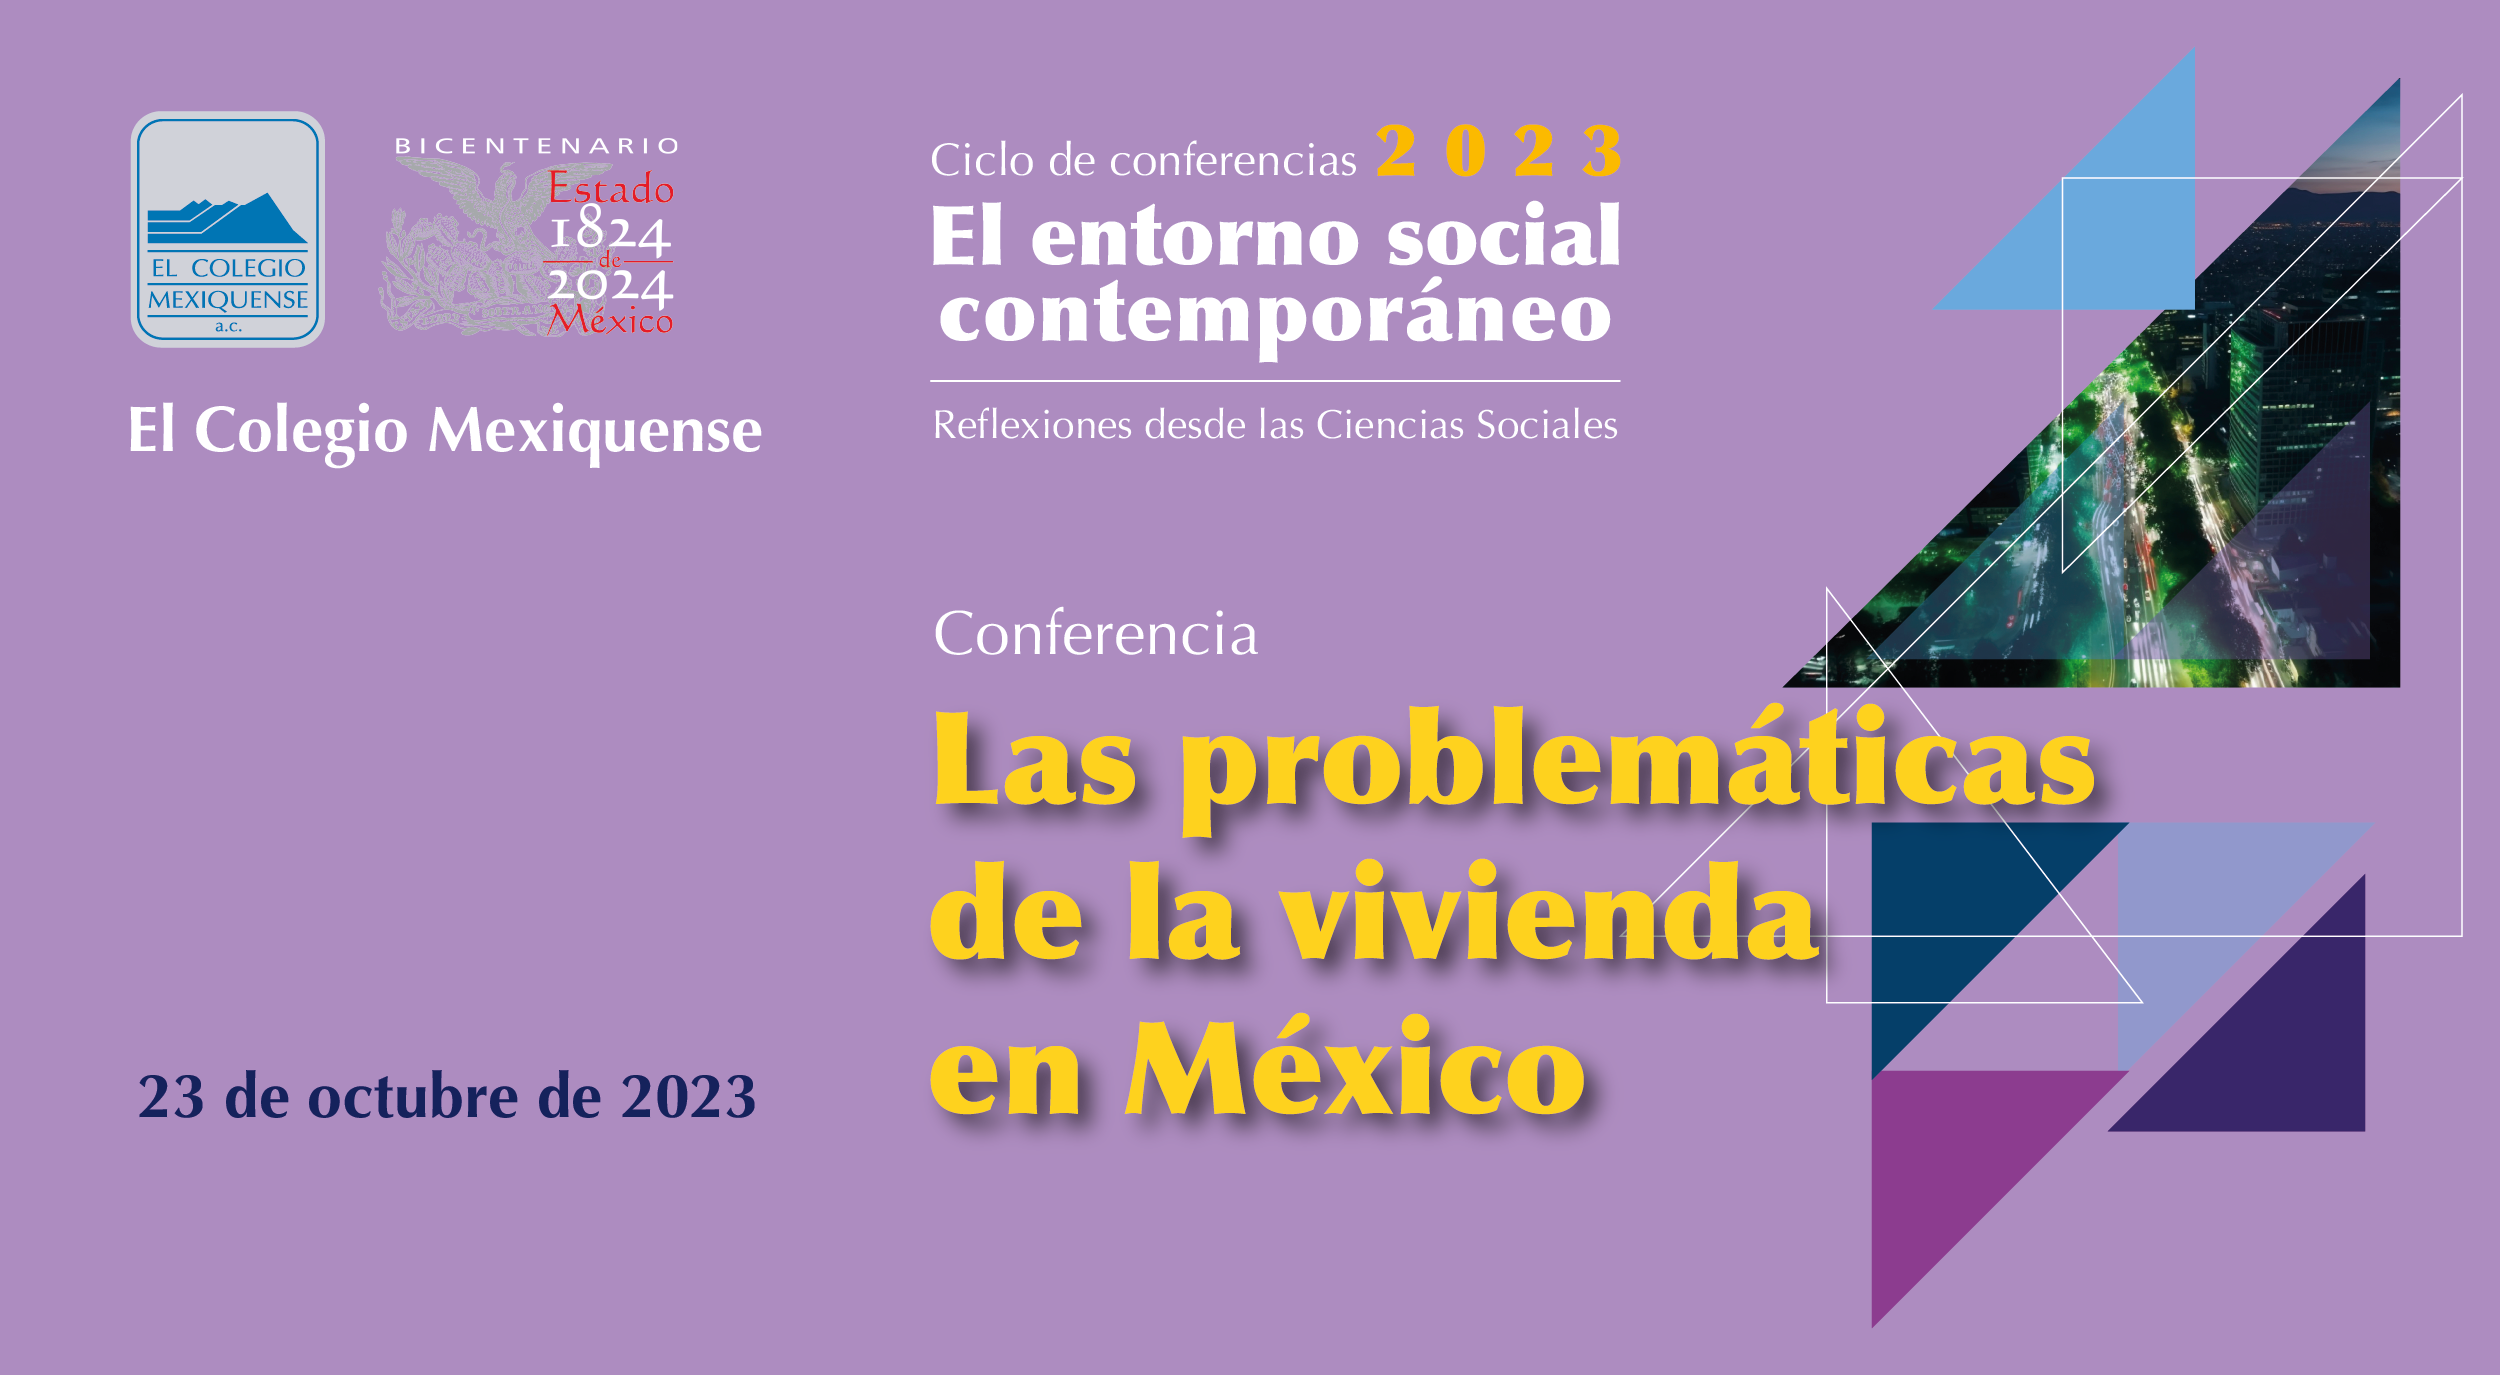 Conferencia. Las problemáticas de la vivienda en México